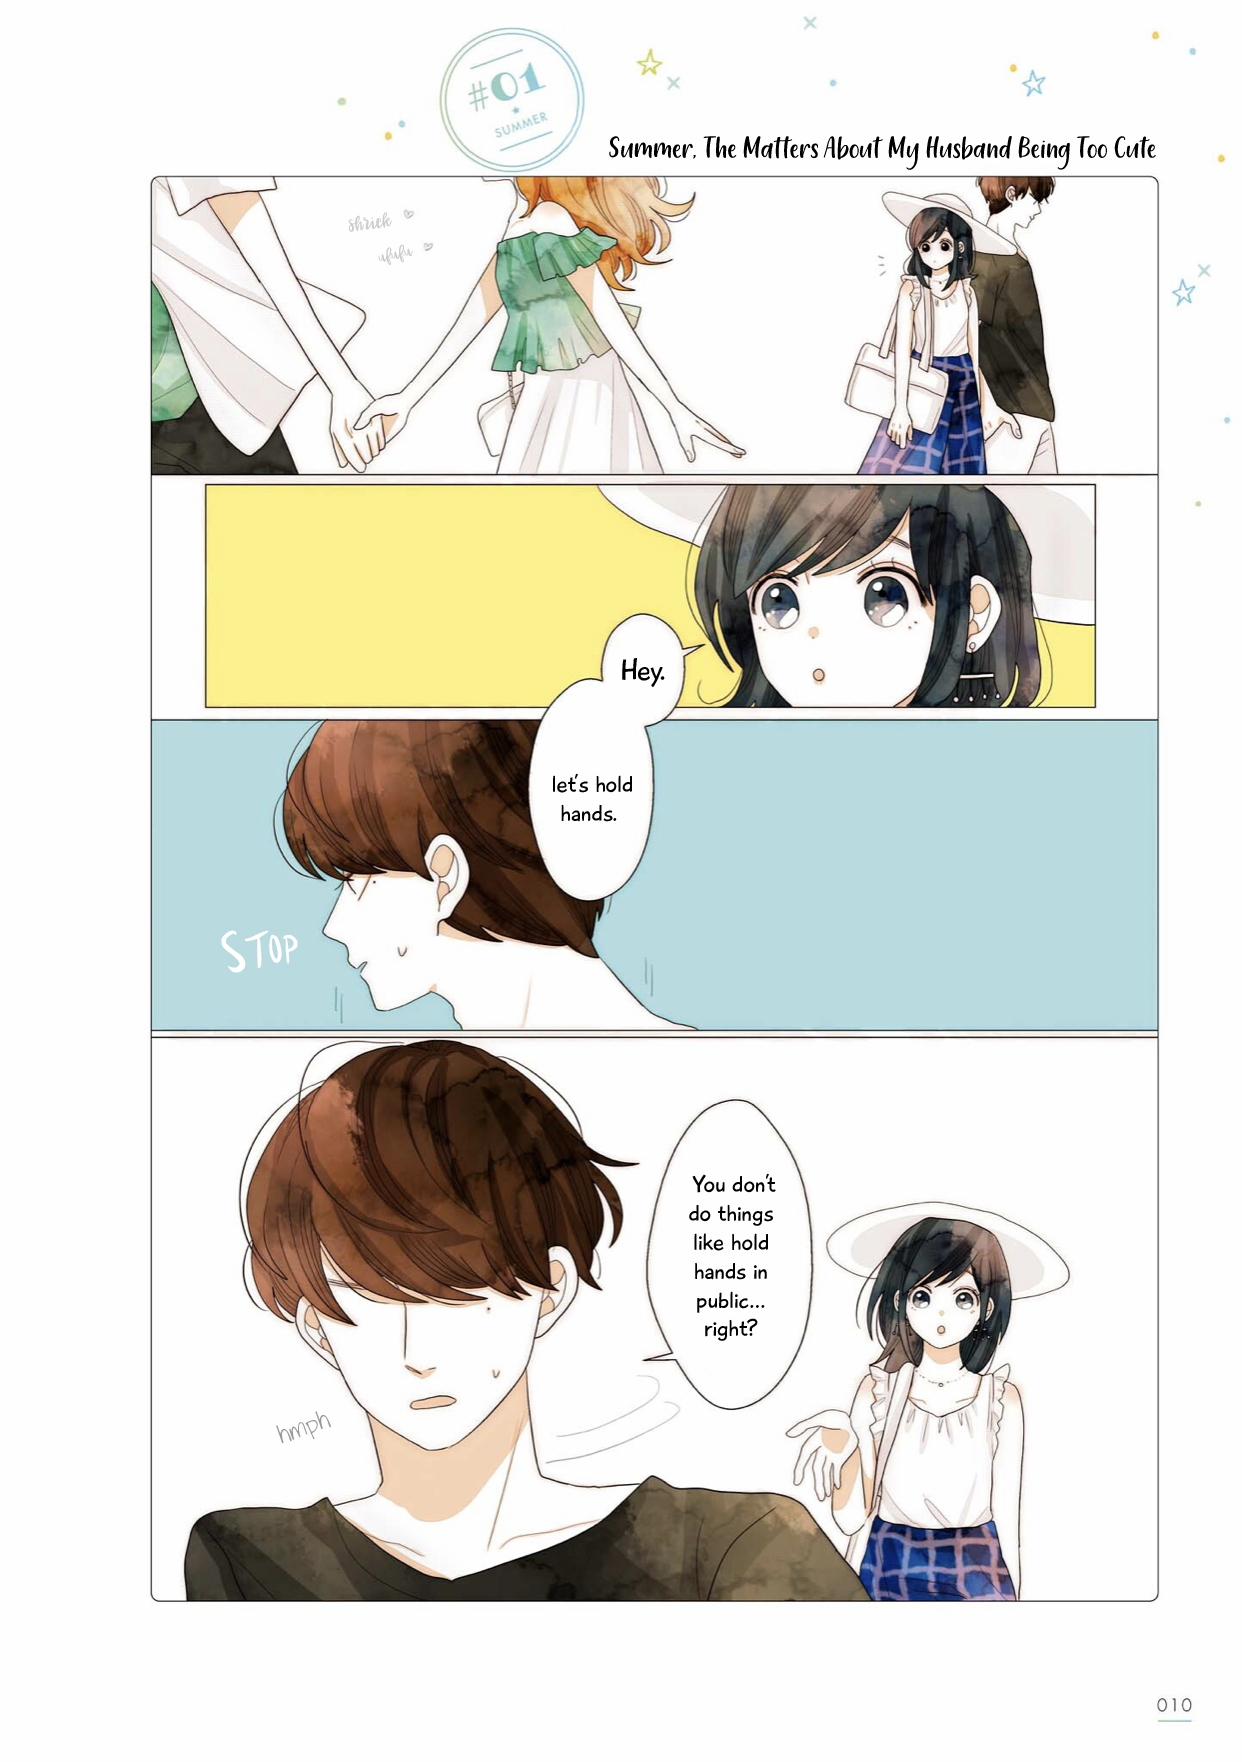 Uchi no Danna ga Kawaisugiru Ken ni Tsuite Vol. 1 Ch. 1 Summer, The Matters of My Husband Being Too Cute